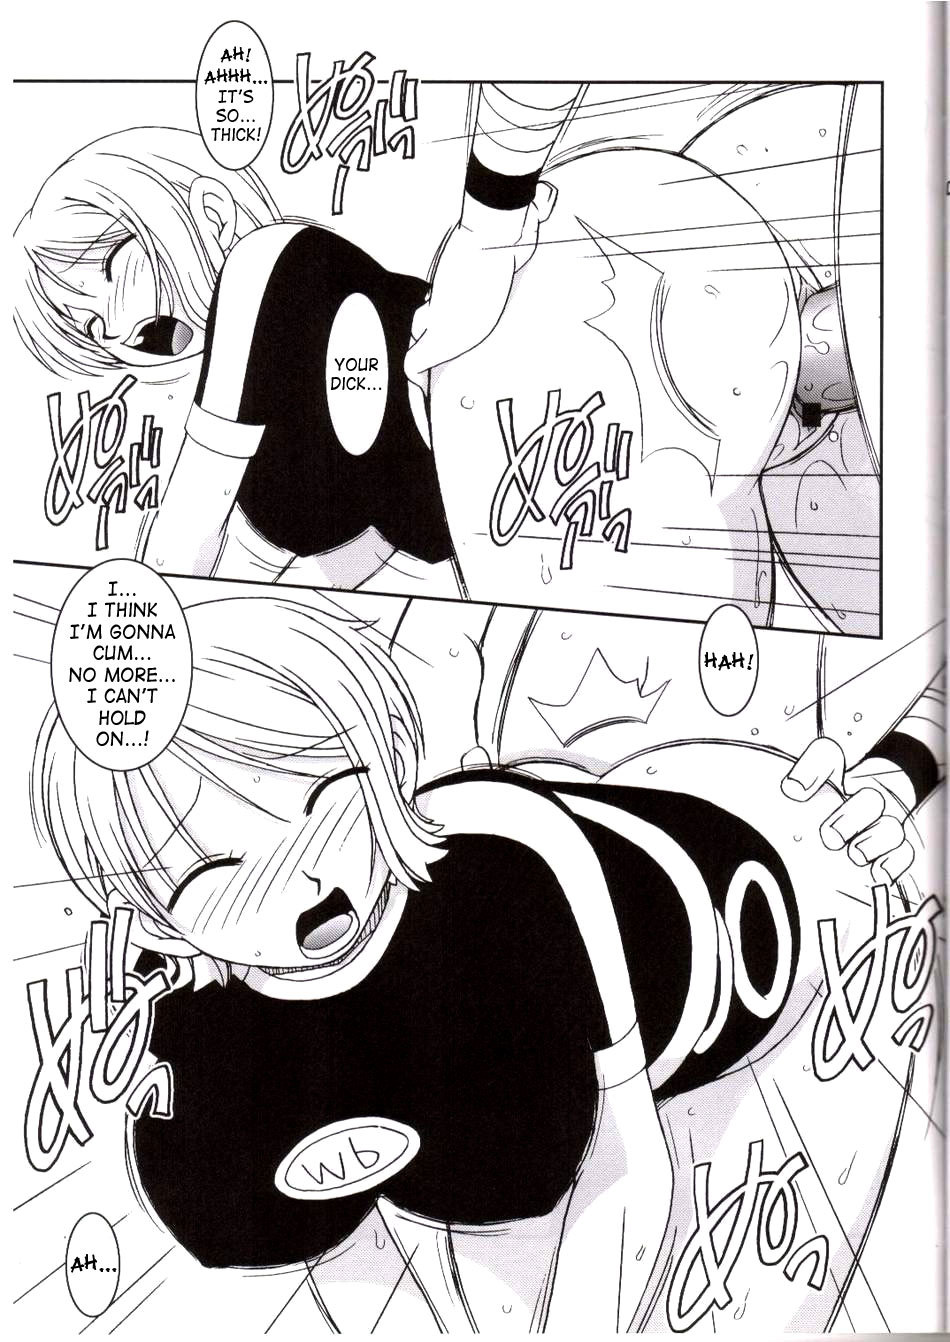 ORANGE PIE Vol.3 one piece 15 hentai manga